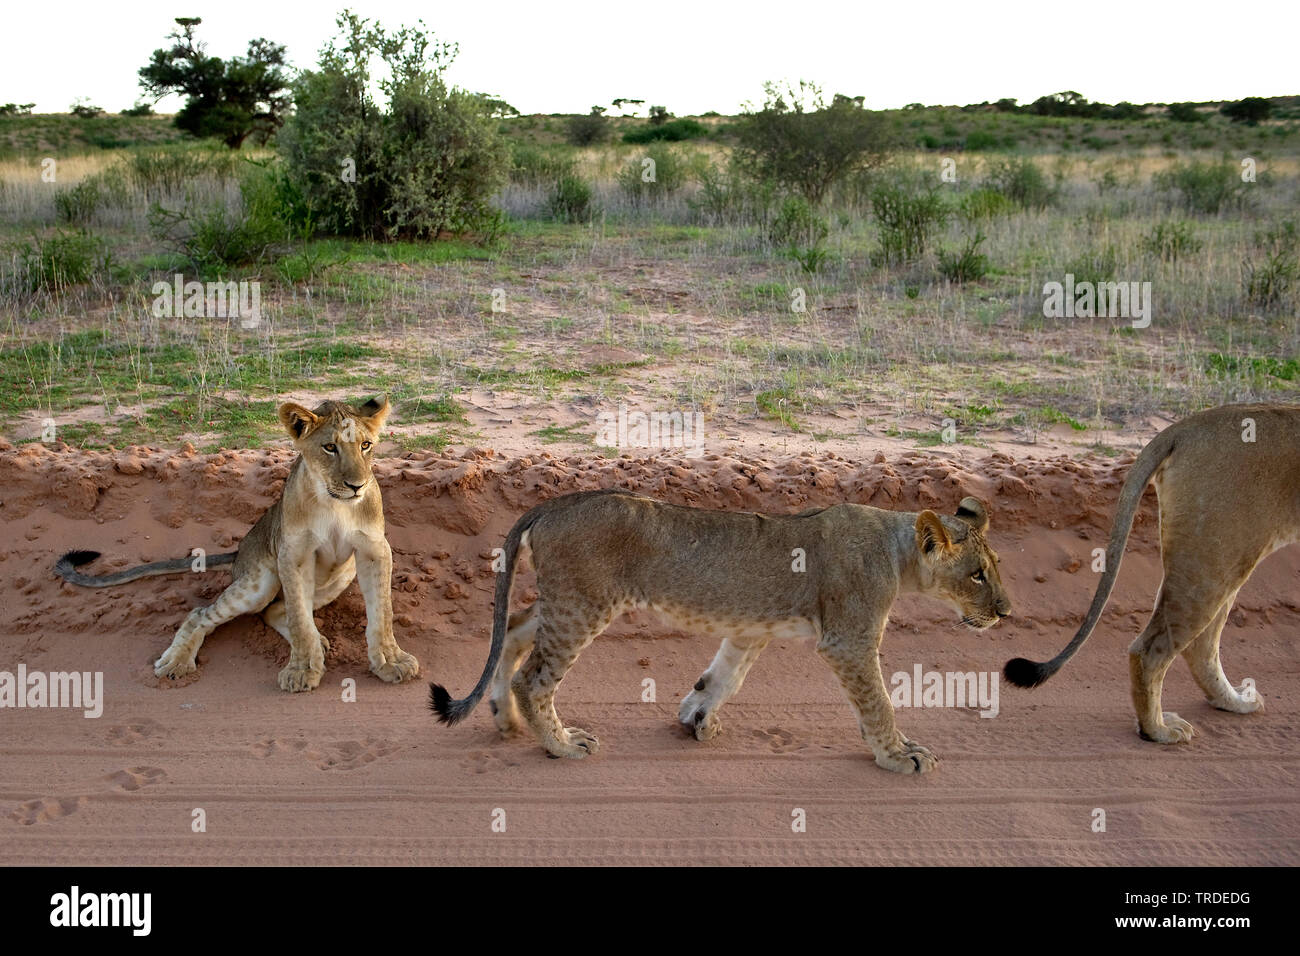 Lion (Panthera leo), giovanile Lions con la madre su un percorso, Sud Africa Foto Stock